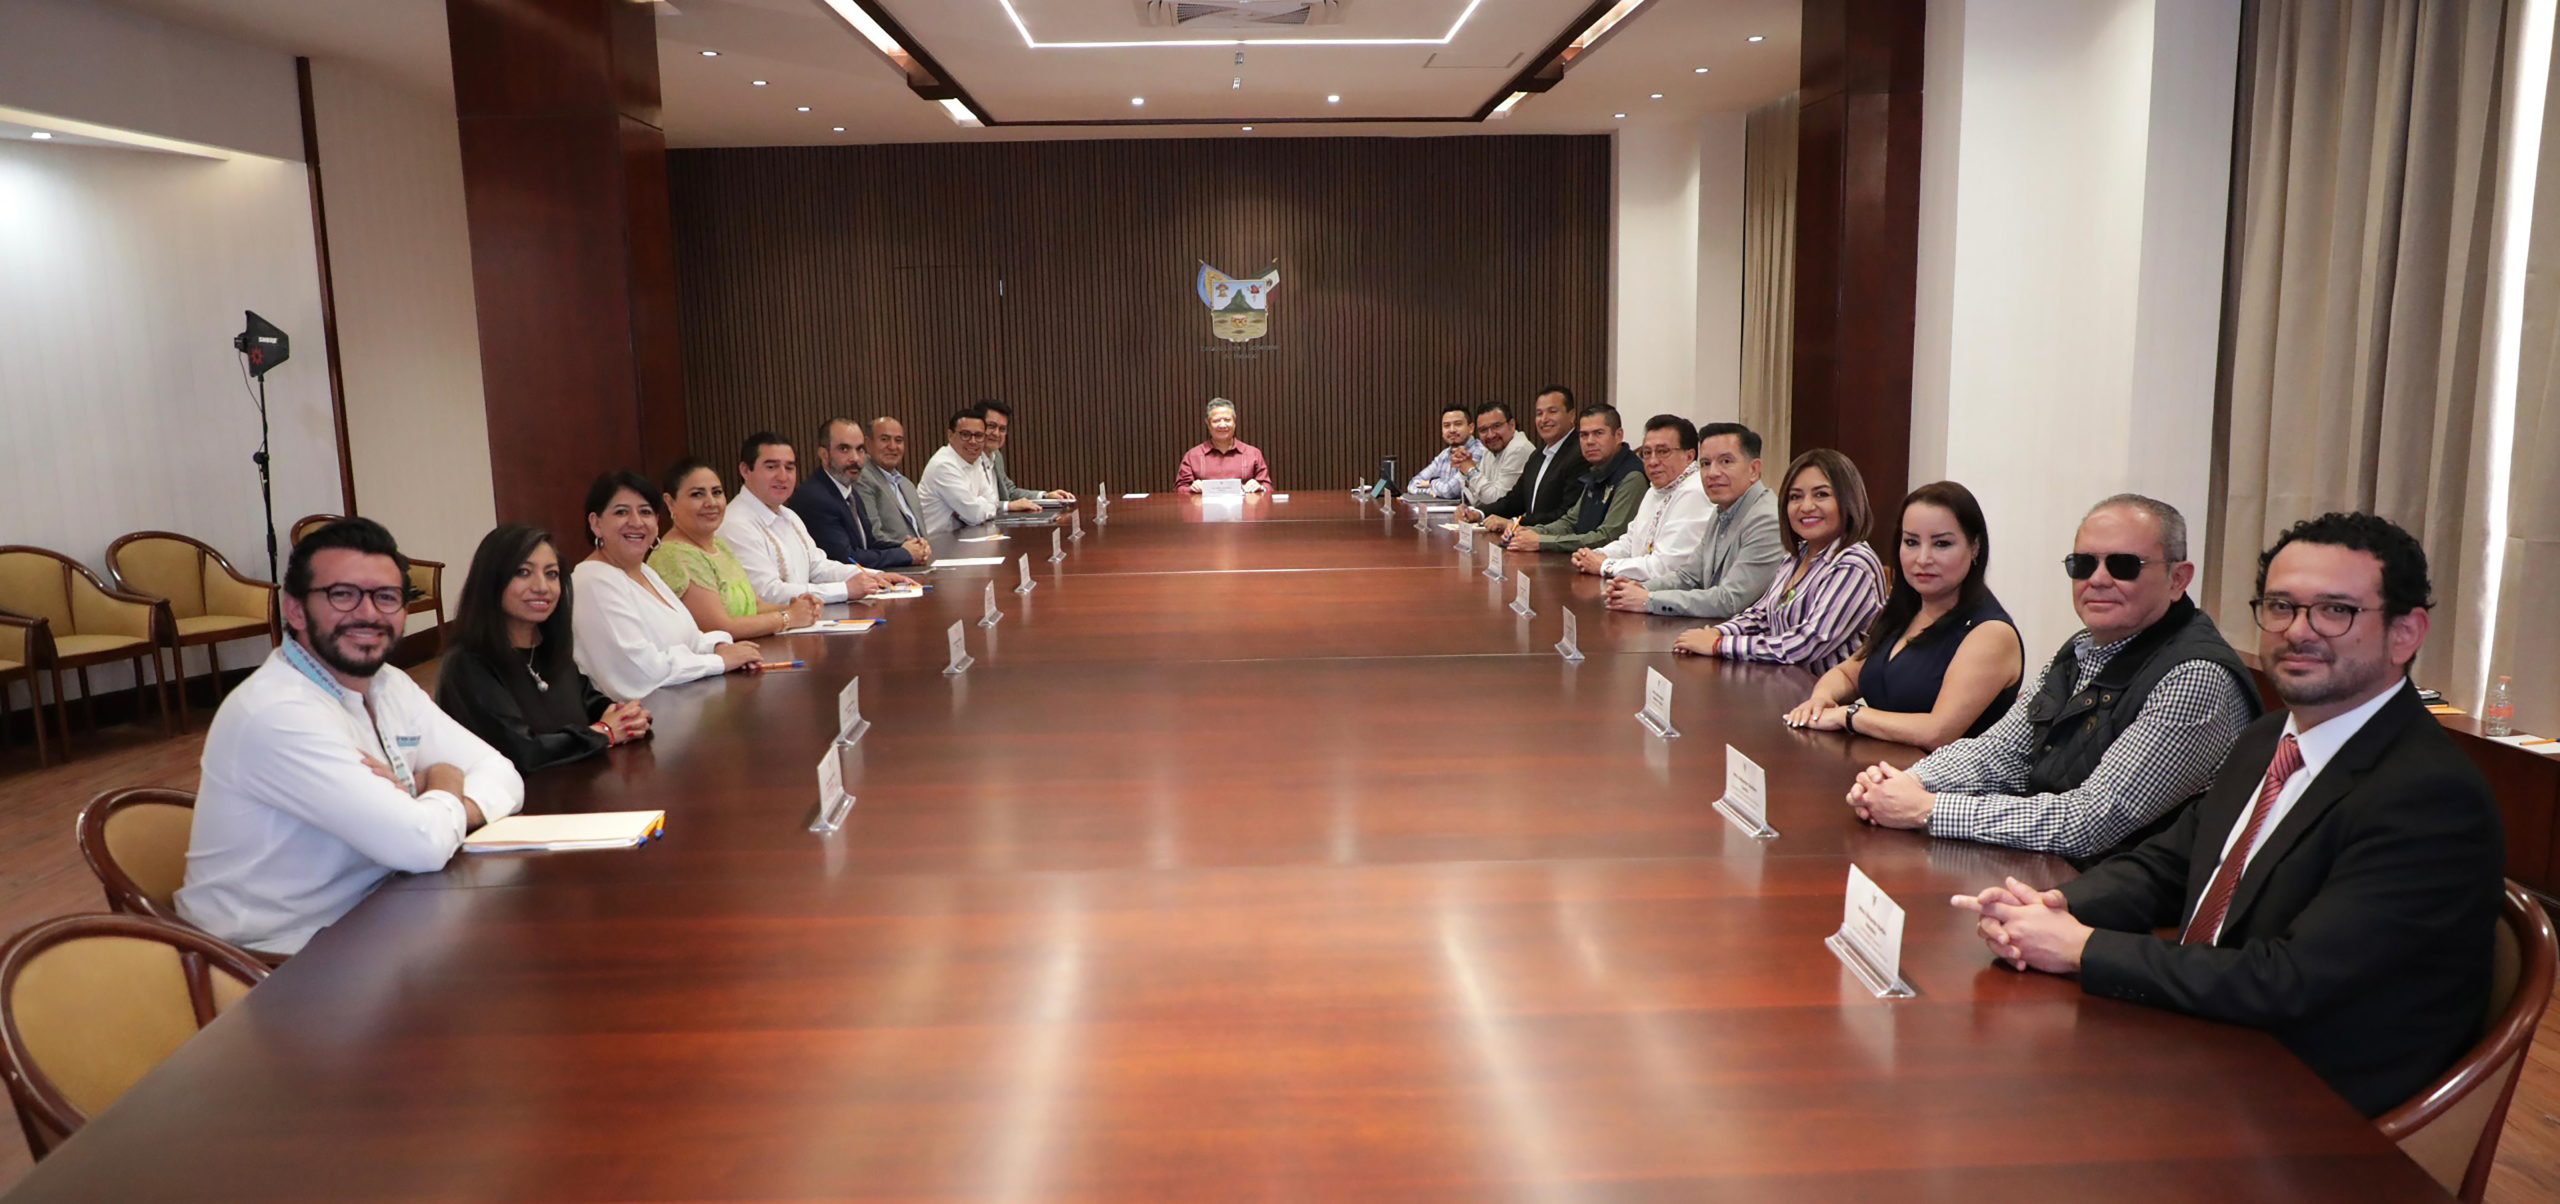 Titular del Ejecutivo de Hidalgo lidera sesión de trabajo con su equipo de gobierno